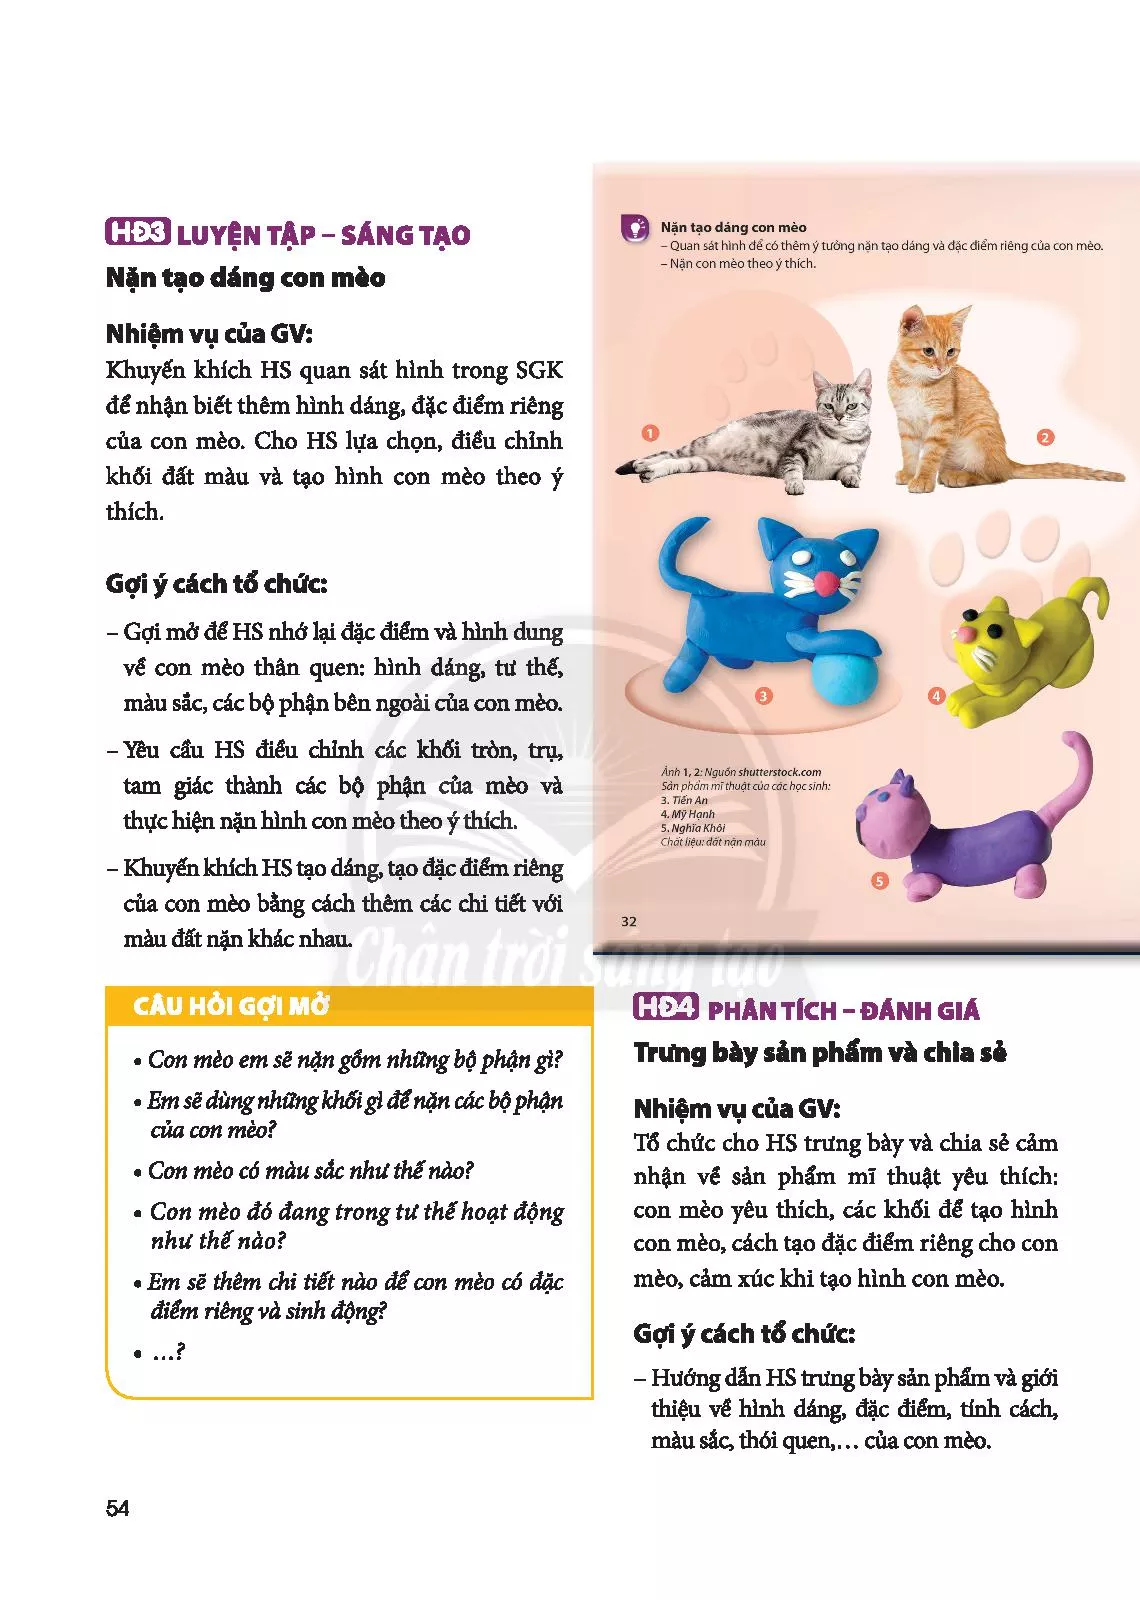 SGV Scan] ✓ Bài 1: Con mèo tinh nghịch là một cuốn sách giáo viên rất thú vị giúp các em học sinh thích thú hơn với môn học tiếng Việt. Hãy xem hình ảnh liên quan để khám phá nội dung bài học hấp dẫn này!